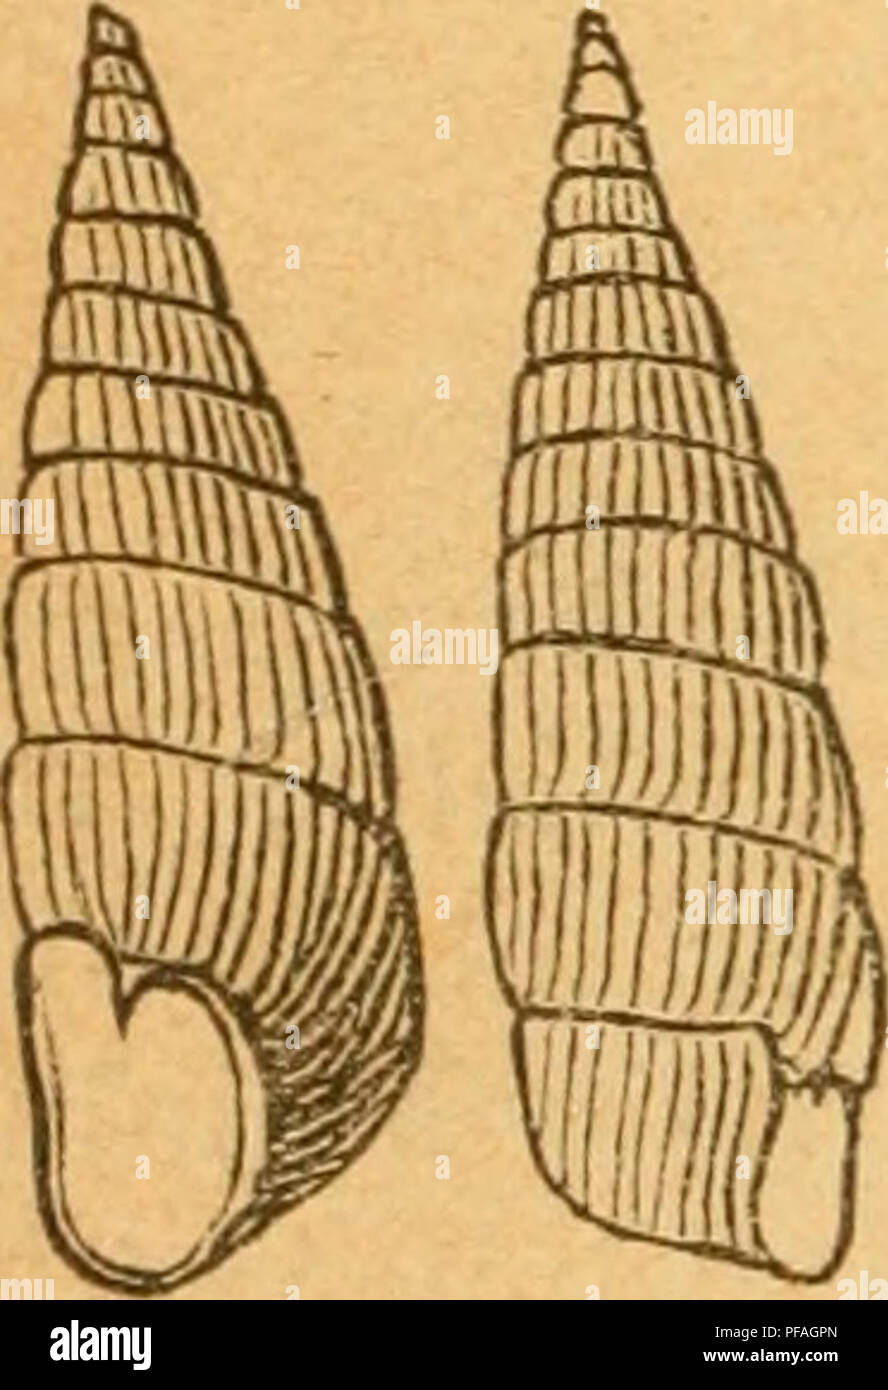 . Deutsche excursions-mollusken-fauna. Mollusks. 270 Fig. 159. als begründet erscheinen will. — Dr. Böttger zieht dieses Genus als Section zu Gen. Clausilia. Ich will dasselbe jedoch noch ausgeschieden erhalten, bis die Anatomie des Thieres näher untersucht ist. '^ 1. Balea perversa^ Linne. Turbo perversus, Linne, Syst. nat. ed. X. I. p. 767. 1758. Pupa fragilis, Drap., tabl. p. 64 Nr. 25. — Hist. moH. p. 63 t. 4 fig. 4. — C. Pfeiffer, Naturg. I. p. 56 t. 3 fig. 16. Fupa perversa, Küster, in Chemnitz ed. p. 142 t. 17 fig. 29. 31. Clausilia perversa. Goldfuss, A. Schmidt, Reibisch. — fragilis,  Stock Photo